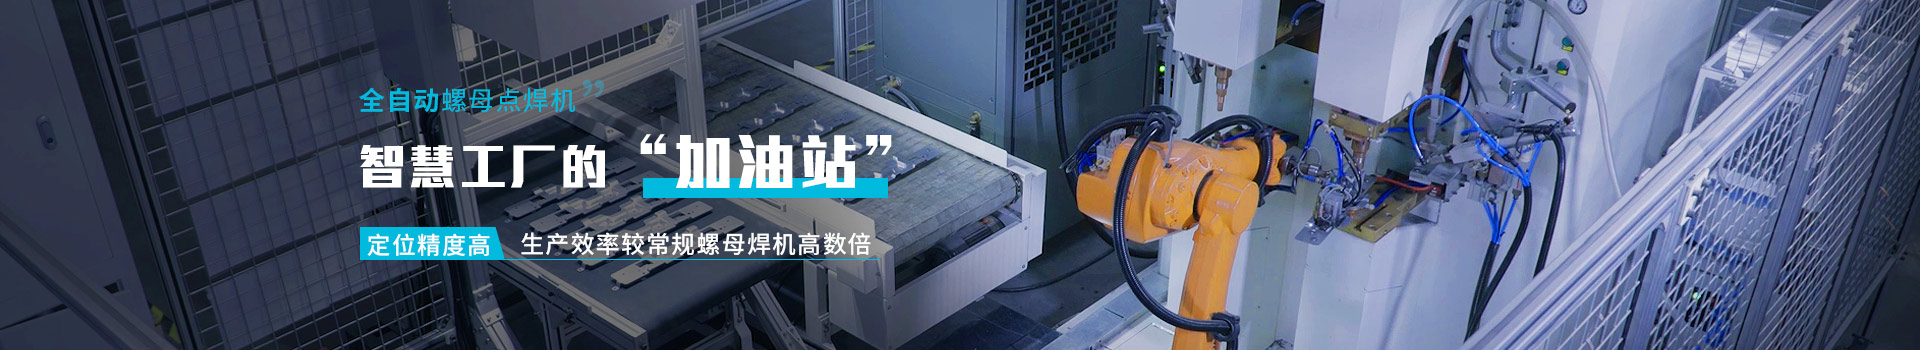 全自動螺母點焊機     智能工廠的"加油站"        定位精度高    生產效率較常規螺母焊機高數倍